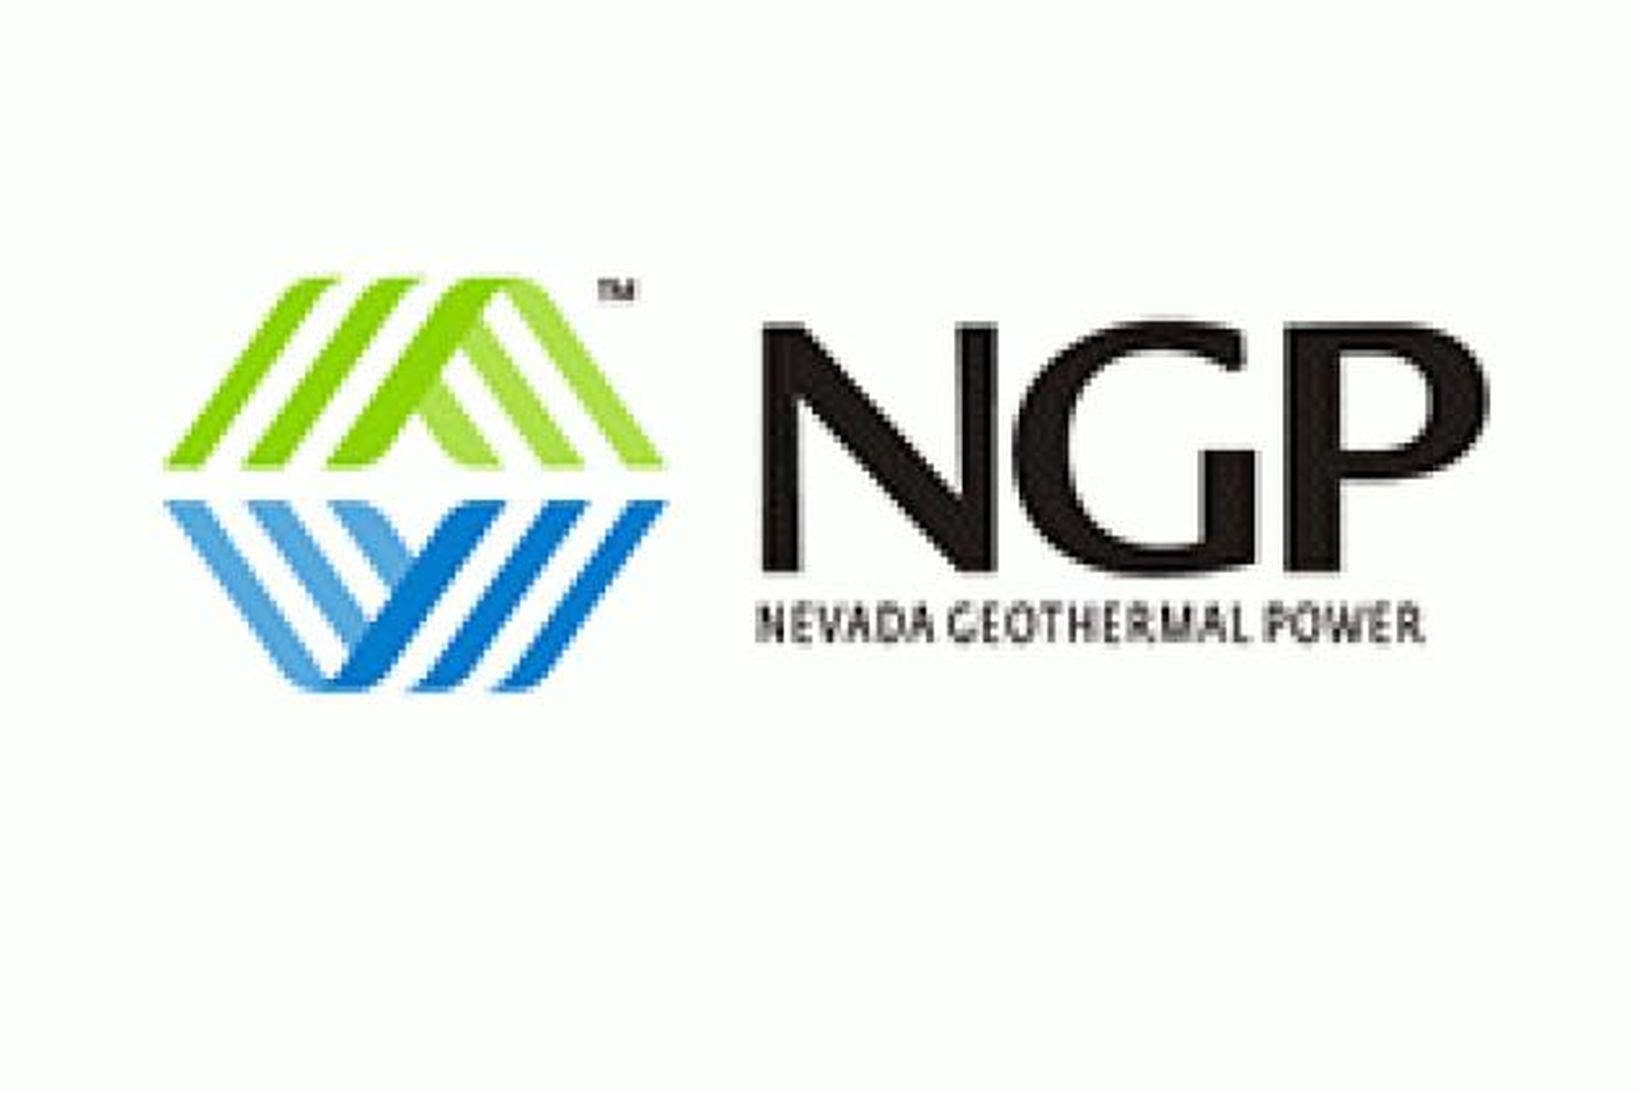 Merki Nevada Geothermal Power